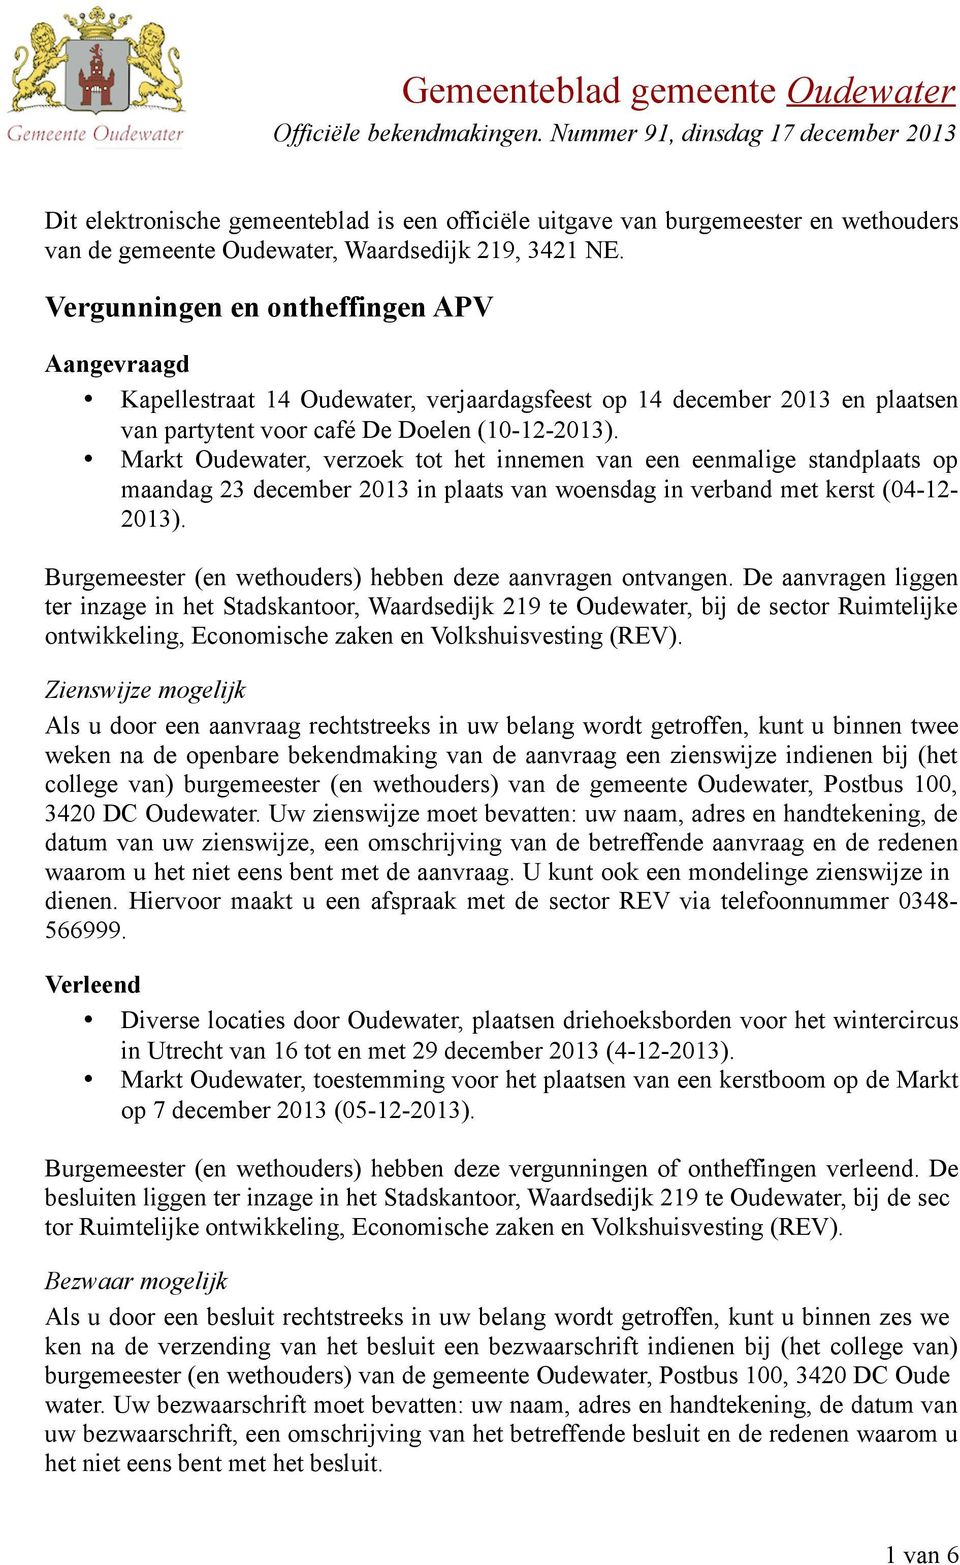 Markt Oudewater, verzoek tot het innemen van een eenmalige standplaats op maandag 23 december 2013 in plaats van woensdag in verband met kerst (04-12- 2013).